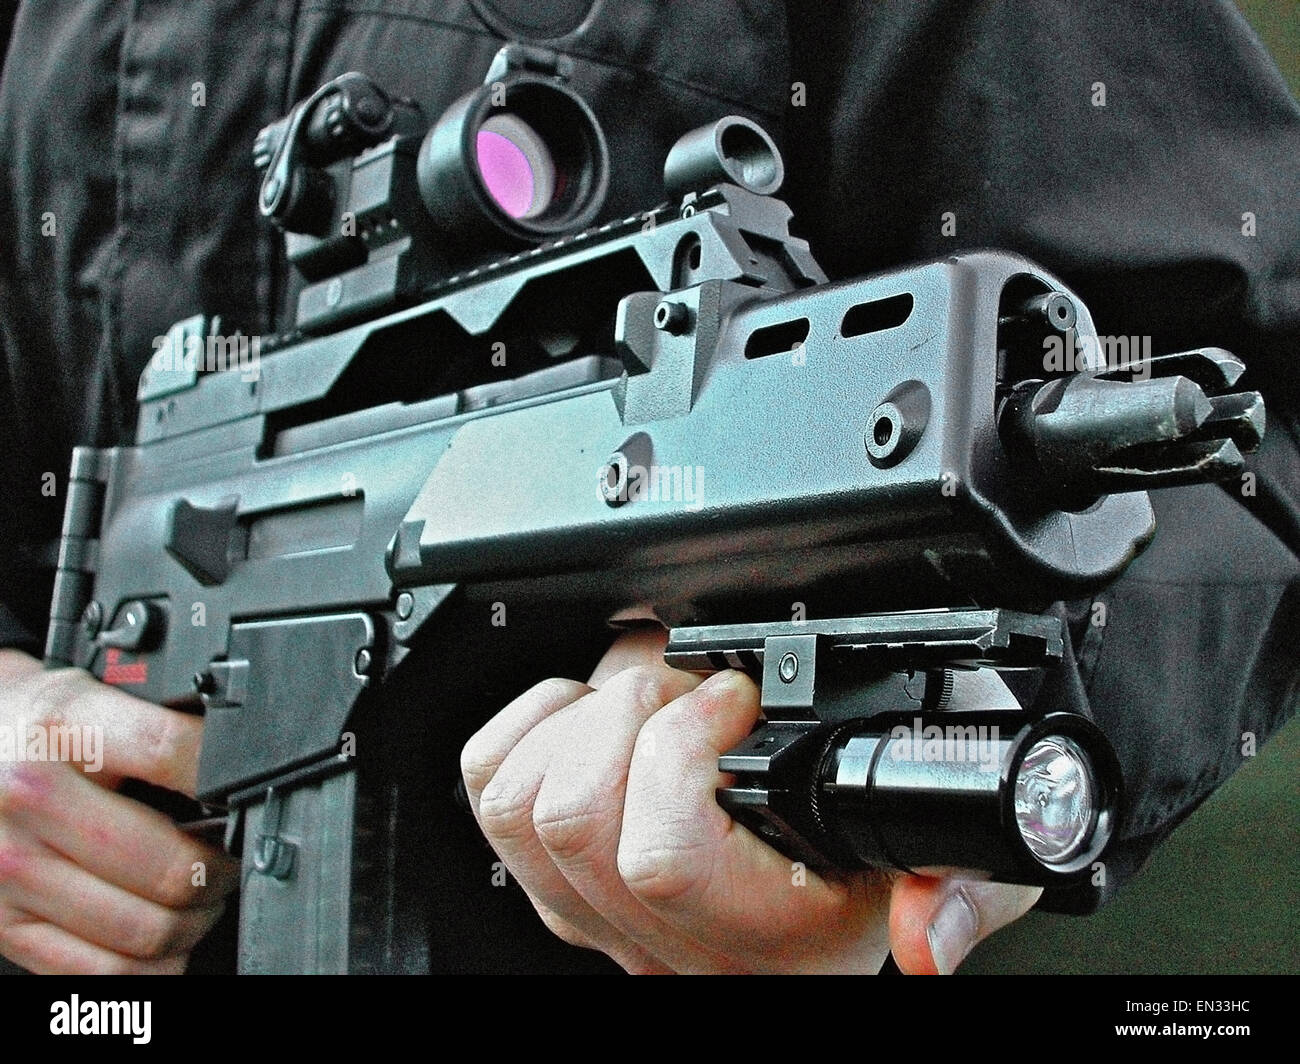 Ein Heckler & Koch G36 C (5,56 mm x 45 NATO Kaliber Gas betriebenen Sturmgewehr) begünstigt durch die britischen Strafverfolgungsbehörden (Polizei). Es hat die Abmessungen einer Maschinenpistole, kombiniert mit der Fähigkeit, Eindringen von 5,56 NATO-Kaliber. Stockfoto